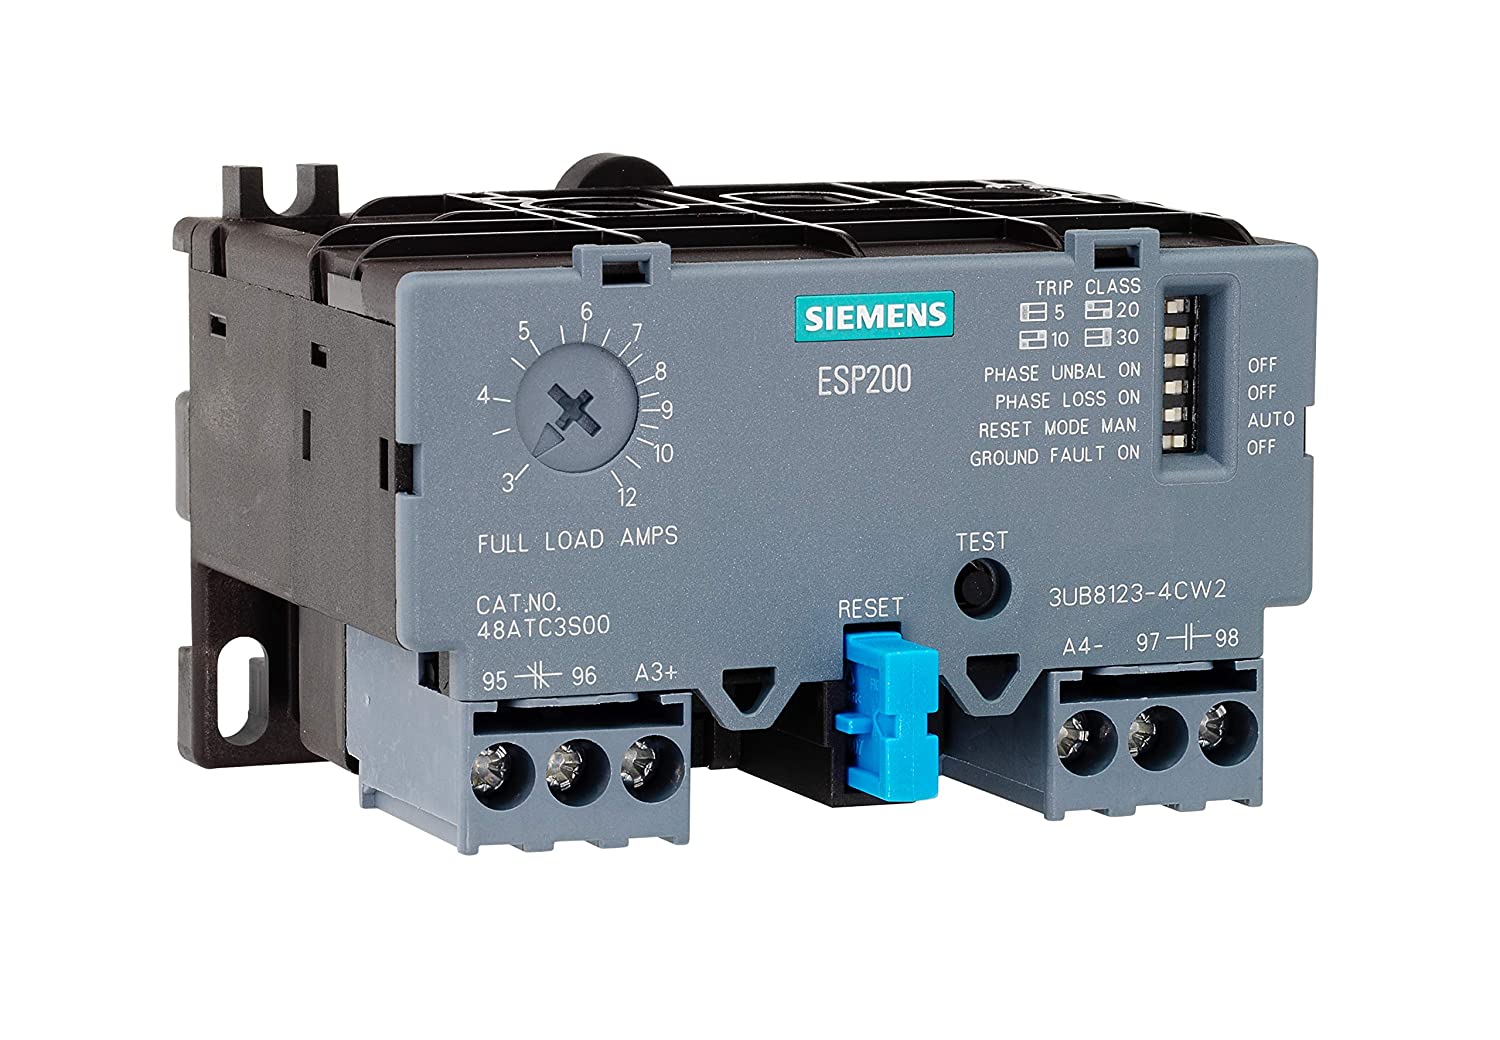 Siemens 14FUF32A* NEMA Size 2 Starter with 13-52 Amp Overload